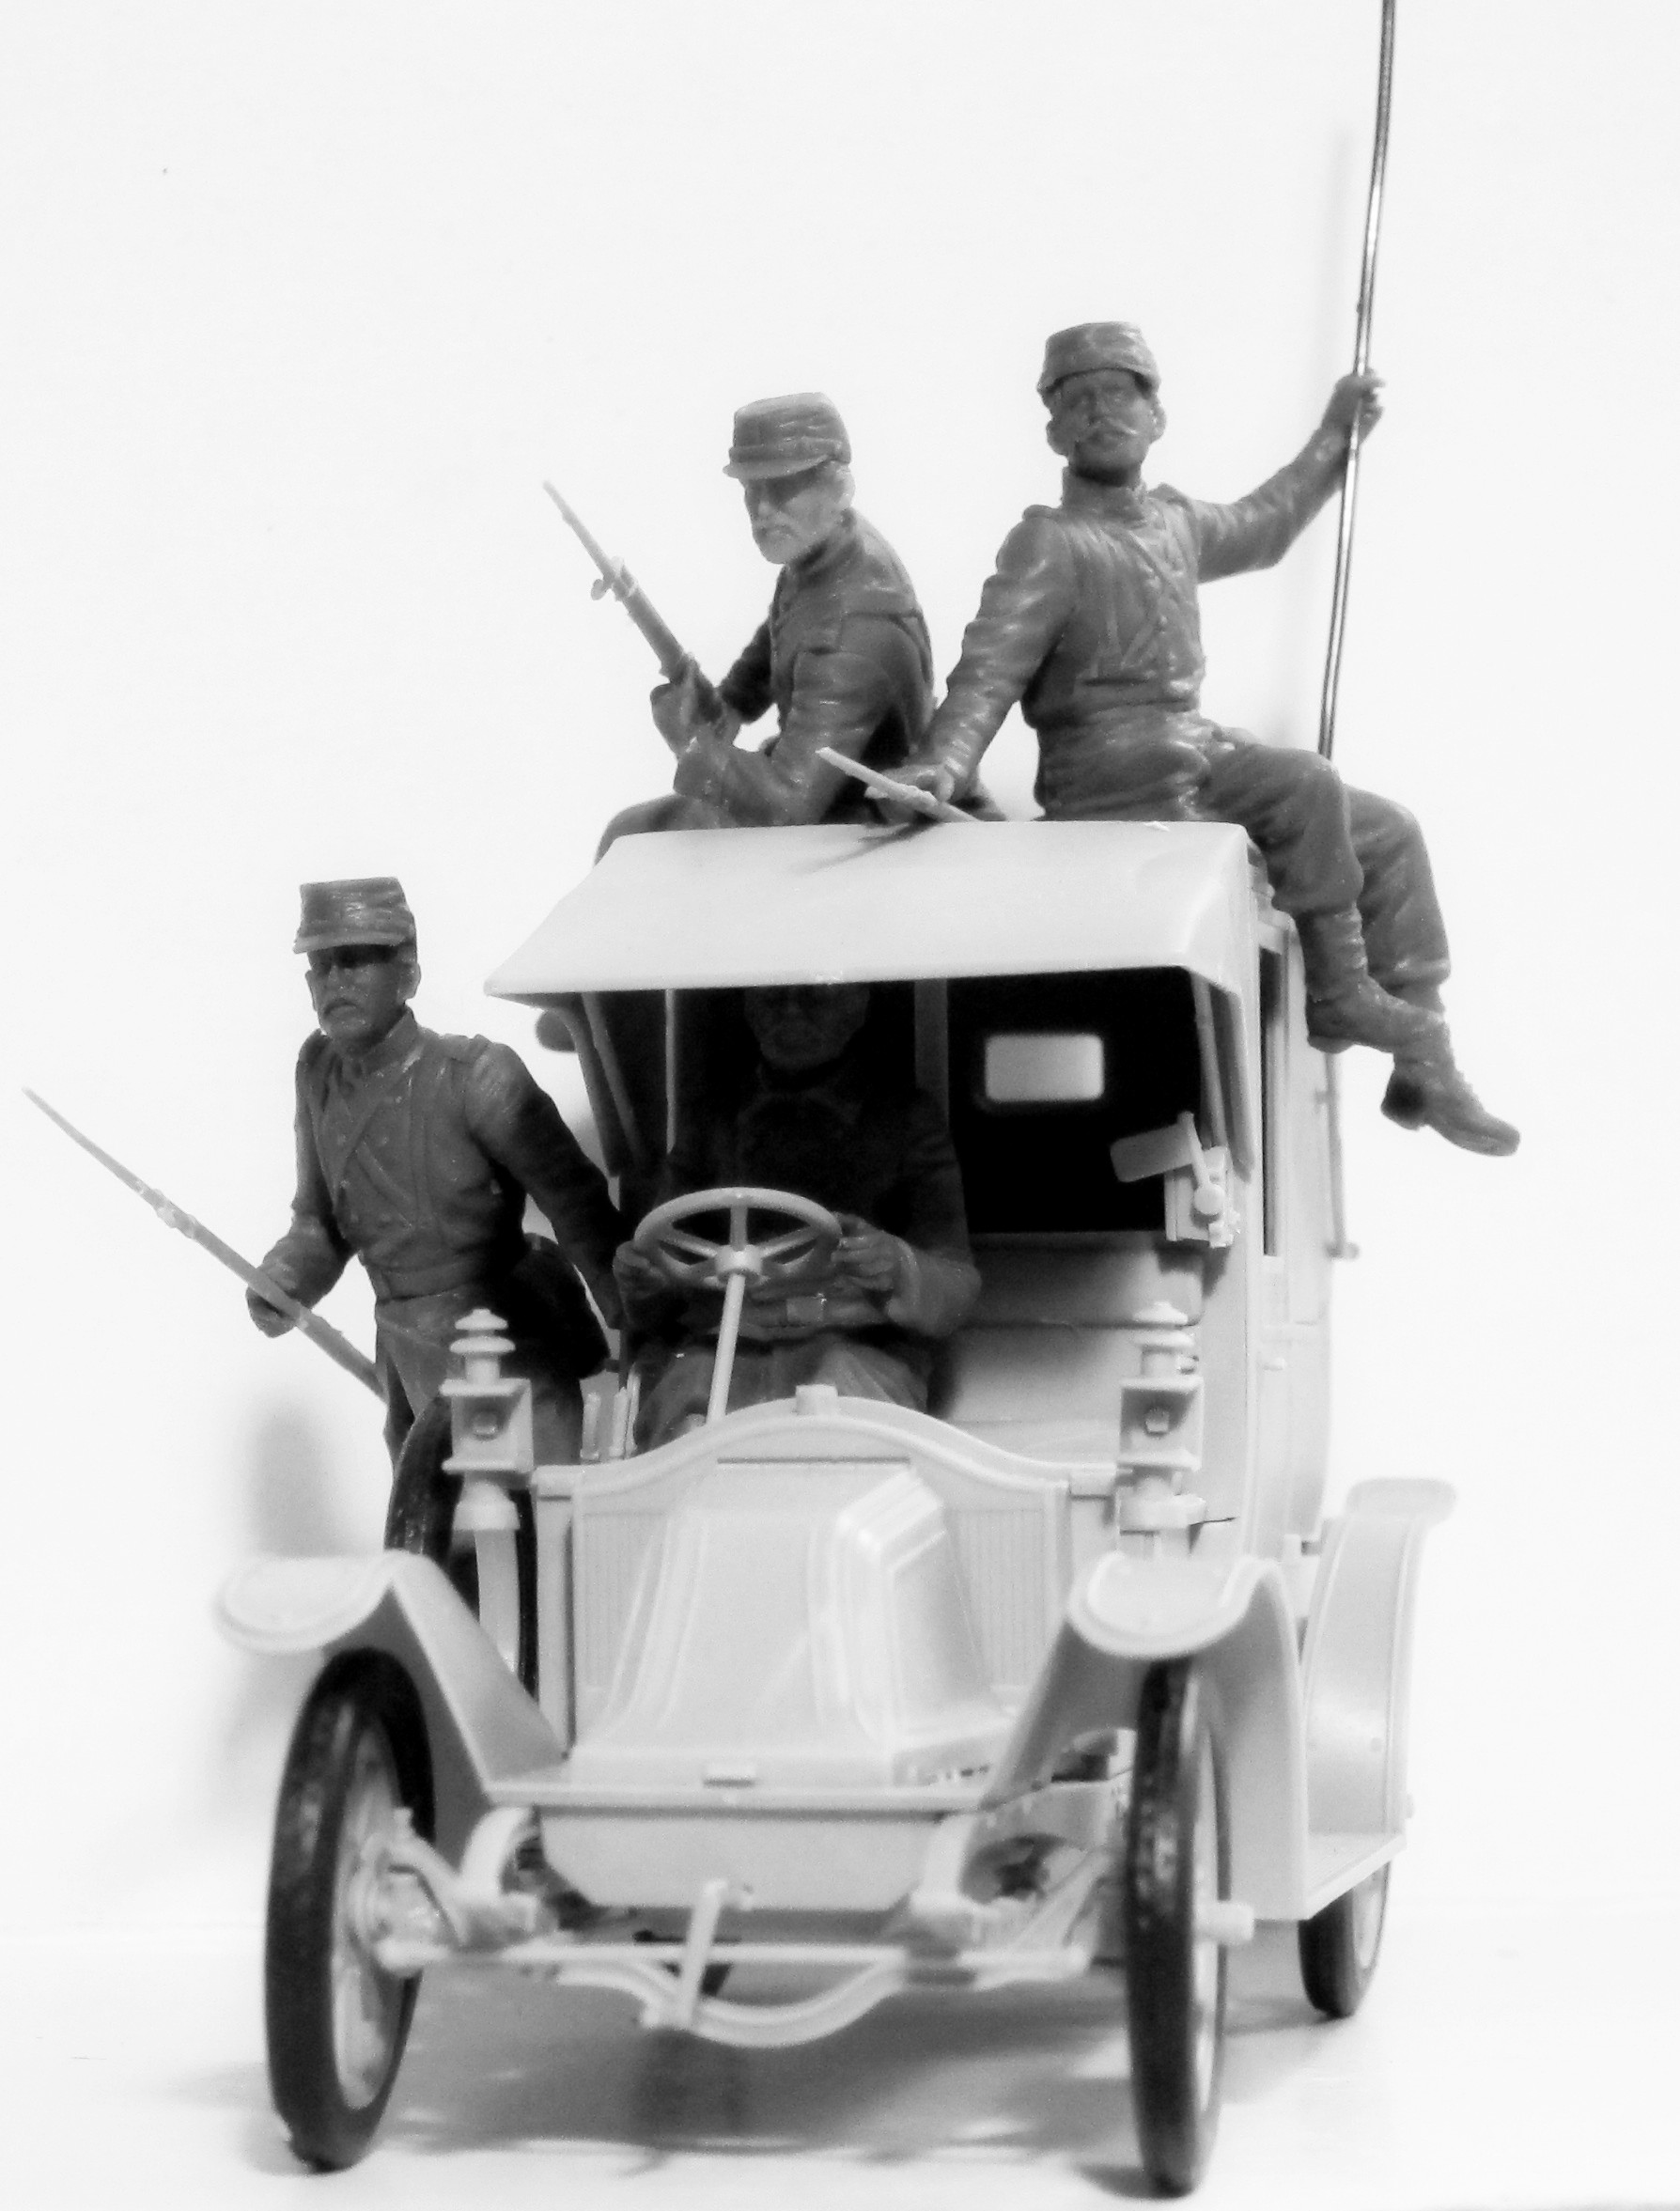 1:35 "Битва на Марне" (1914 г.), Автомобиль такси с французской пехотой 35660